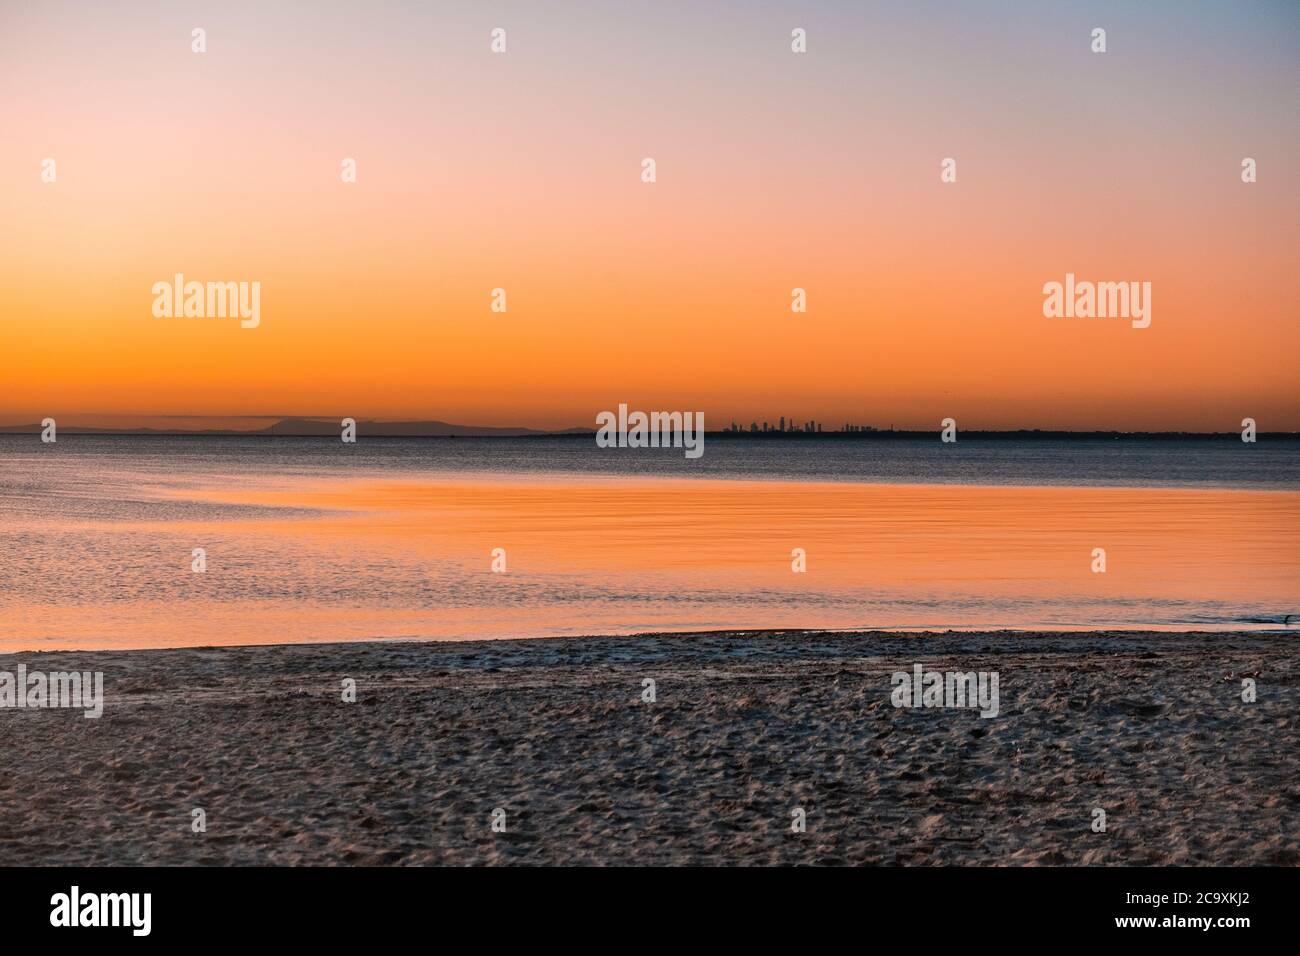 Grattacieli della città lontani al tramonto sulla spiaggia dell'oceano - paesaggio minimalista con spazio per le copie Foto Stock